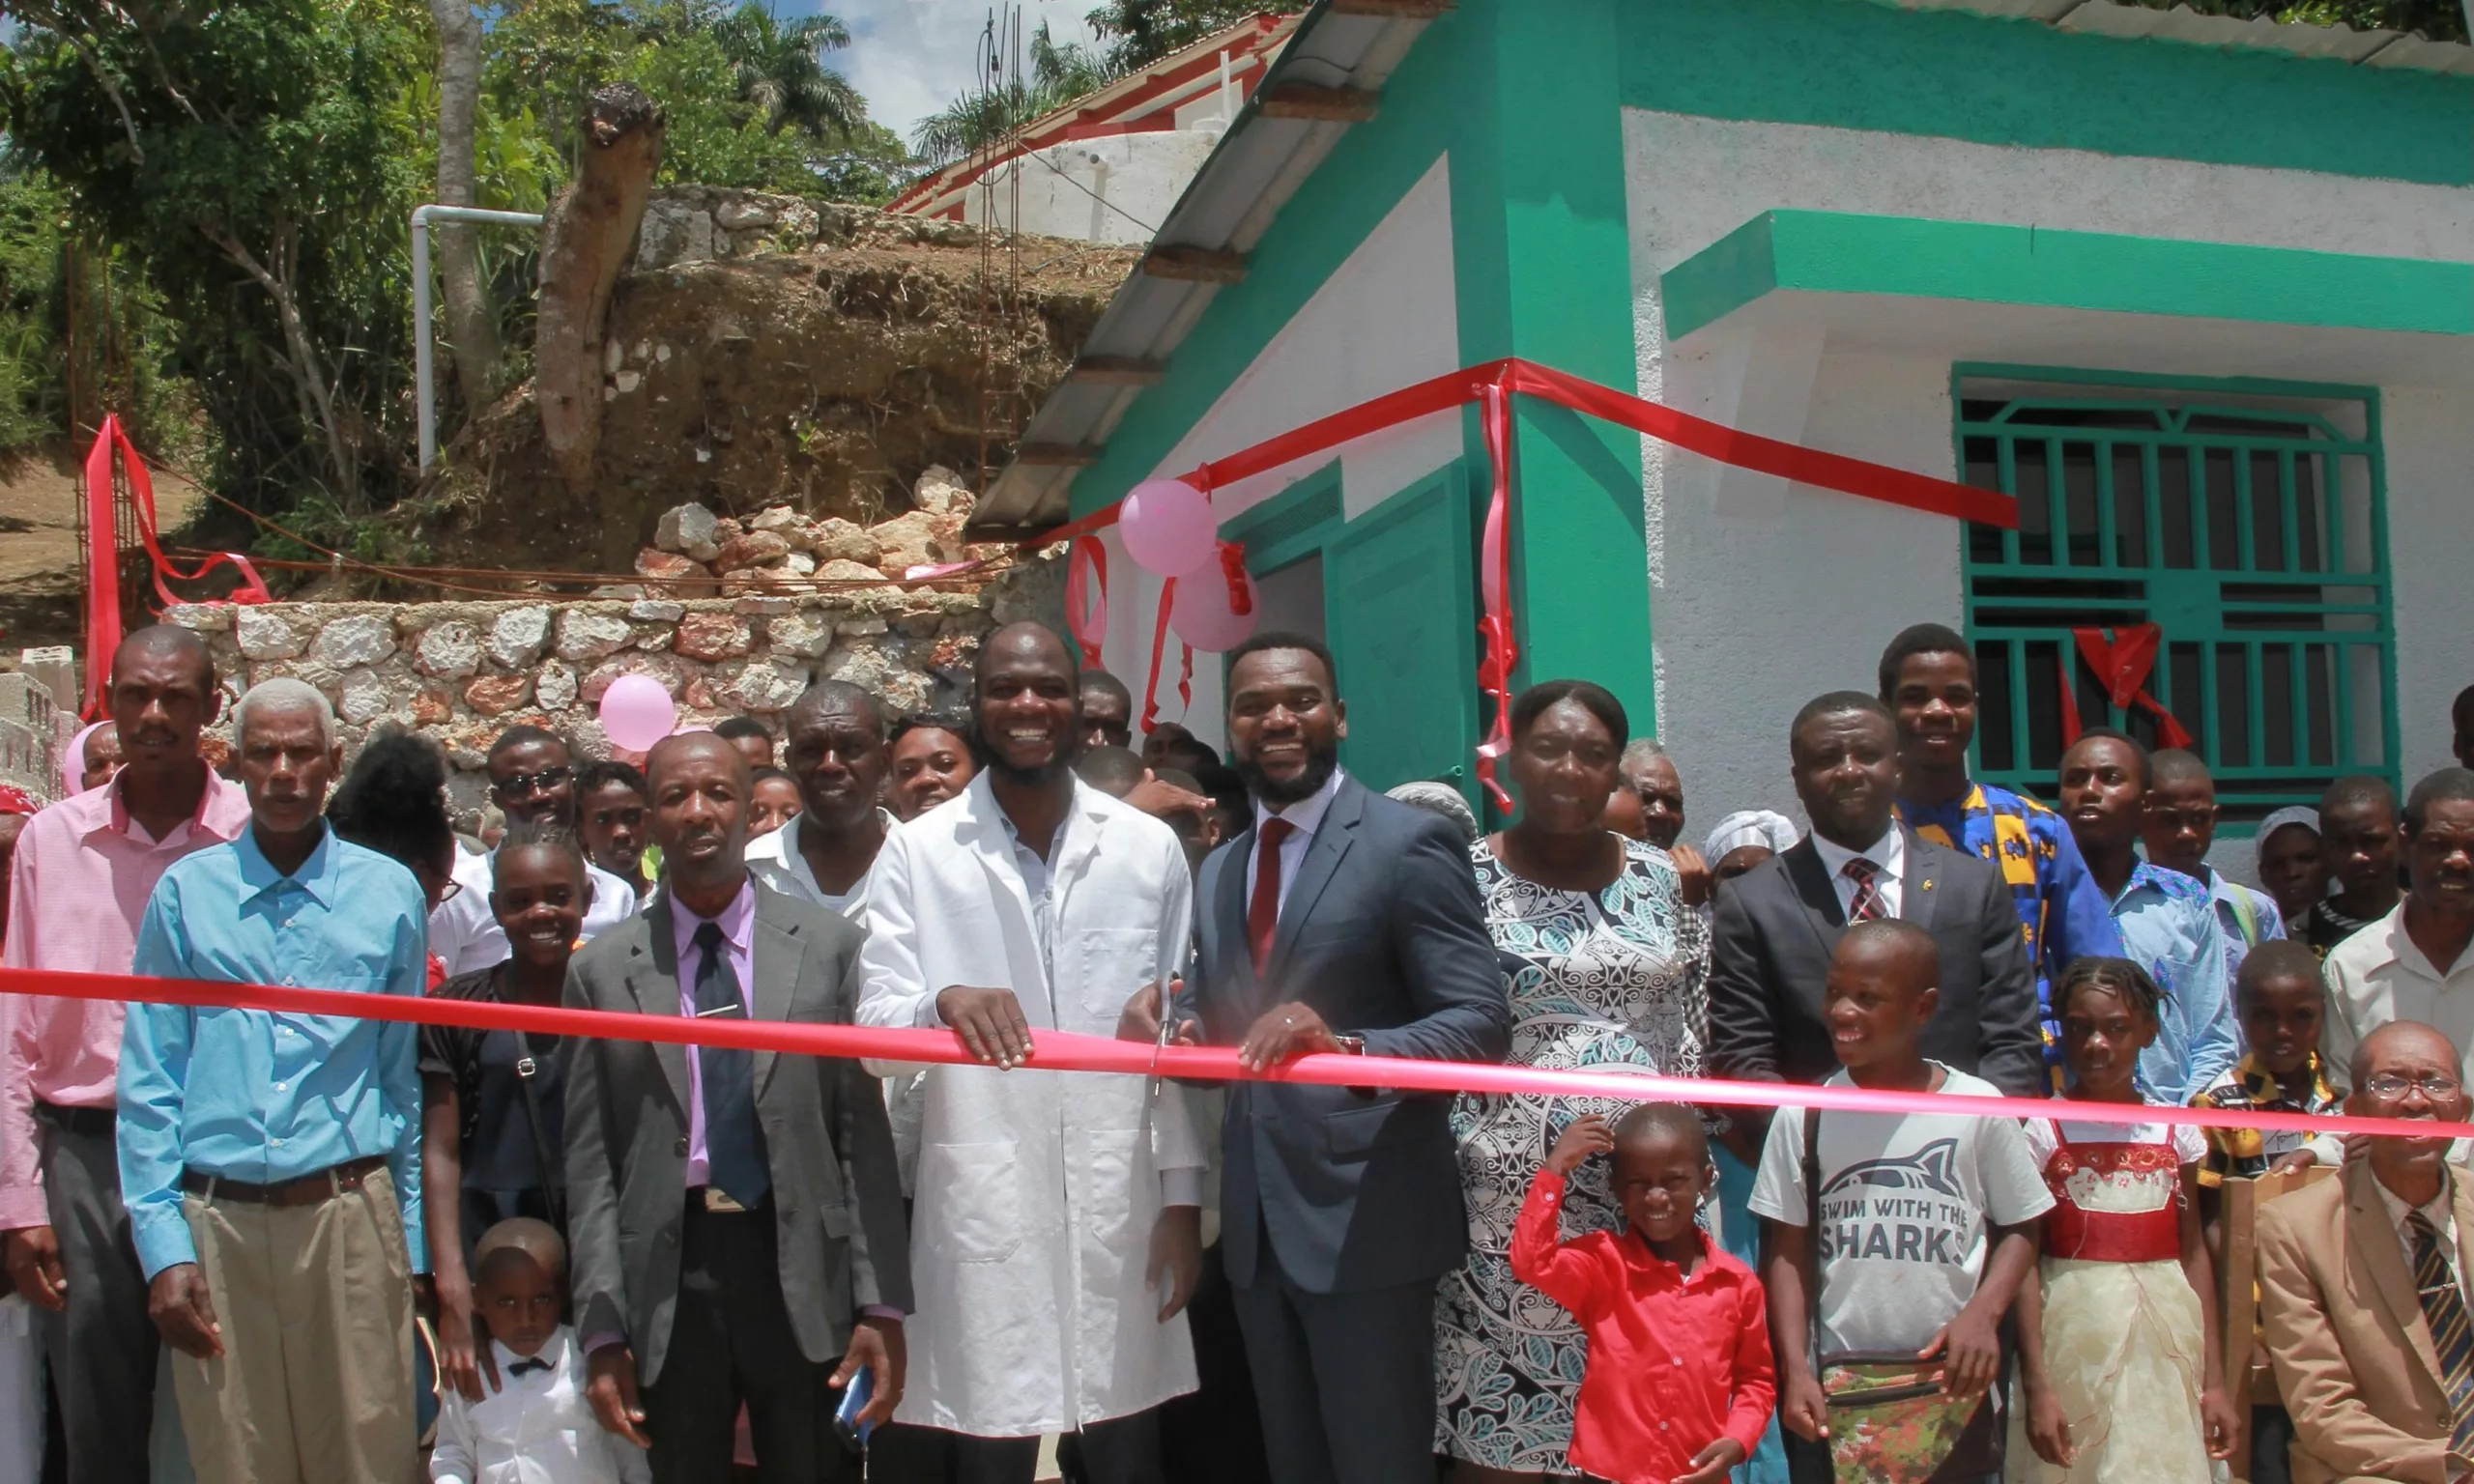 Mount Olive Clinic is Now Open in Jacmel